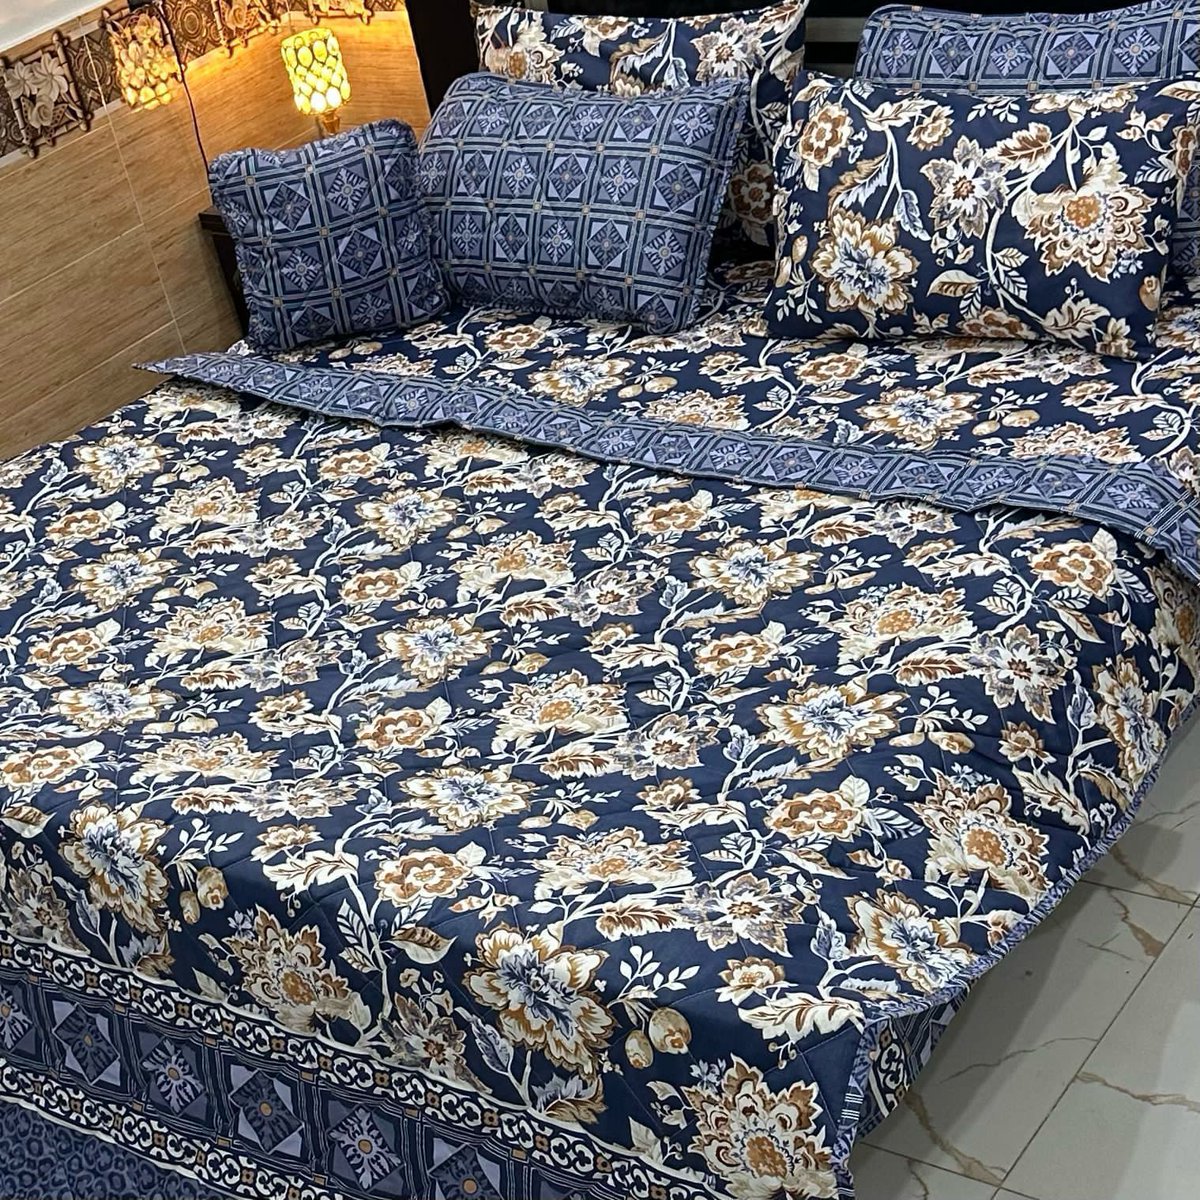 0306 4443038
💎بِسْمِ ٱللَّٰهِ ٱلرَّحْمَٰنِ ٱلرَّحِيمِ💎
💦Summer Eid Collection~24💦
💦ALHAMDULILAH 100 % Original
💦 7Pc Printed Comforter Set*
Fabric : Cotton Mix
*100% Fine Stuff*
*7Pc Comforter Set Details*
💦Prices 4000/-*💎🥰🥰
#PrintedCotton #CottonBedset #razaiset